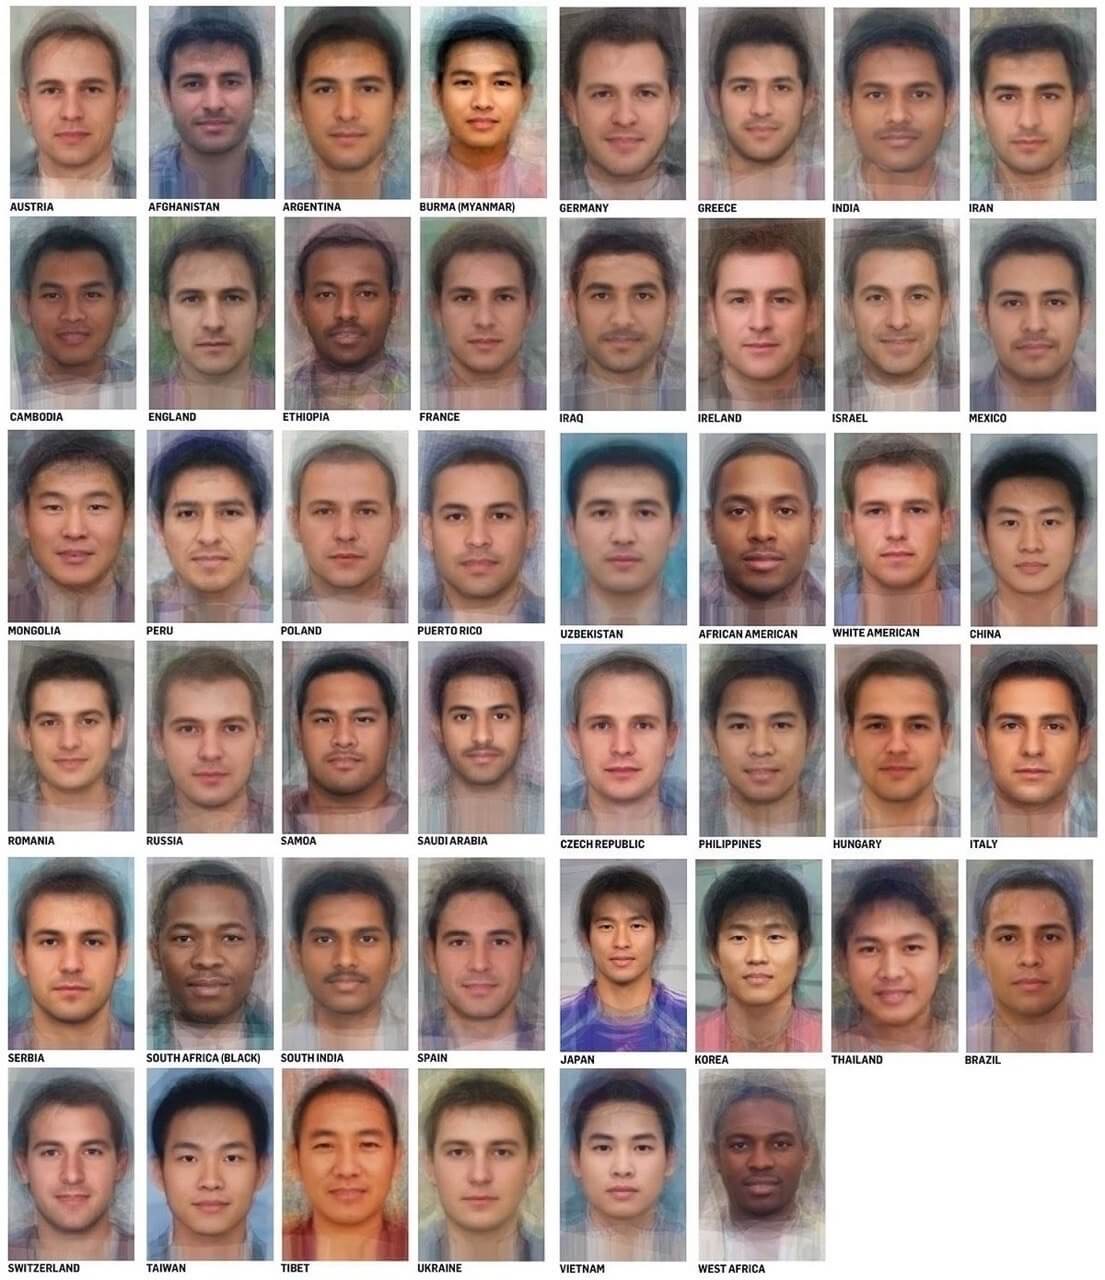 Как выглядят среднестатистические люди в разных странах? Оригинал картинки с лицами разных расс. Фото.